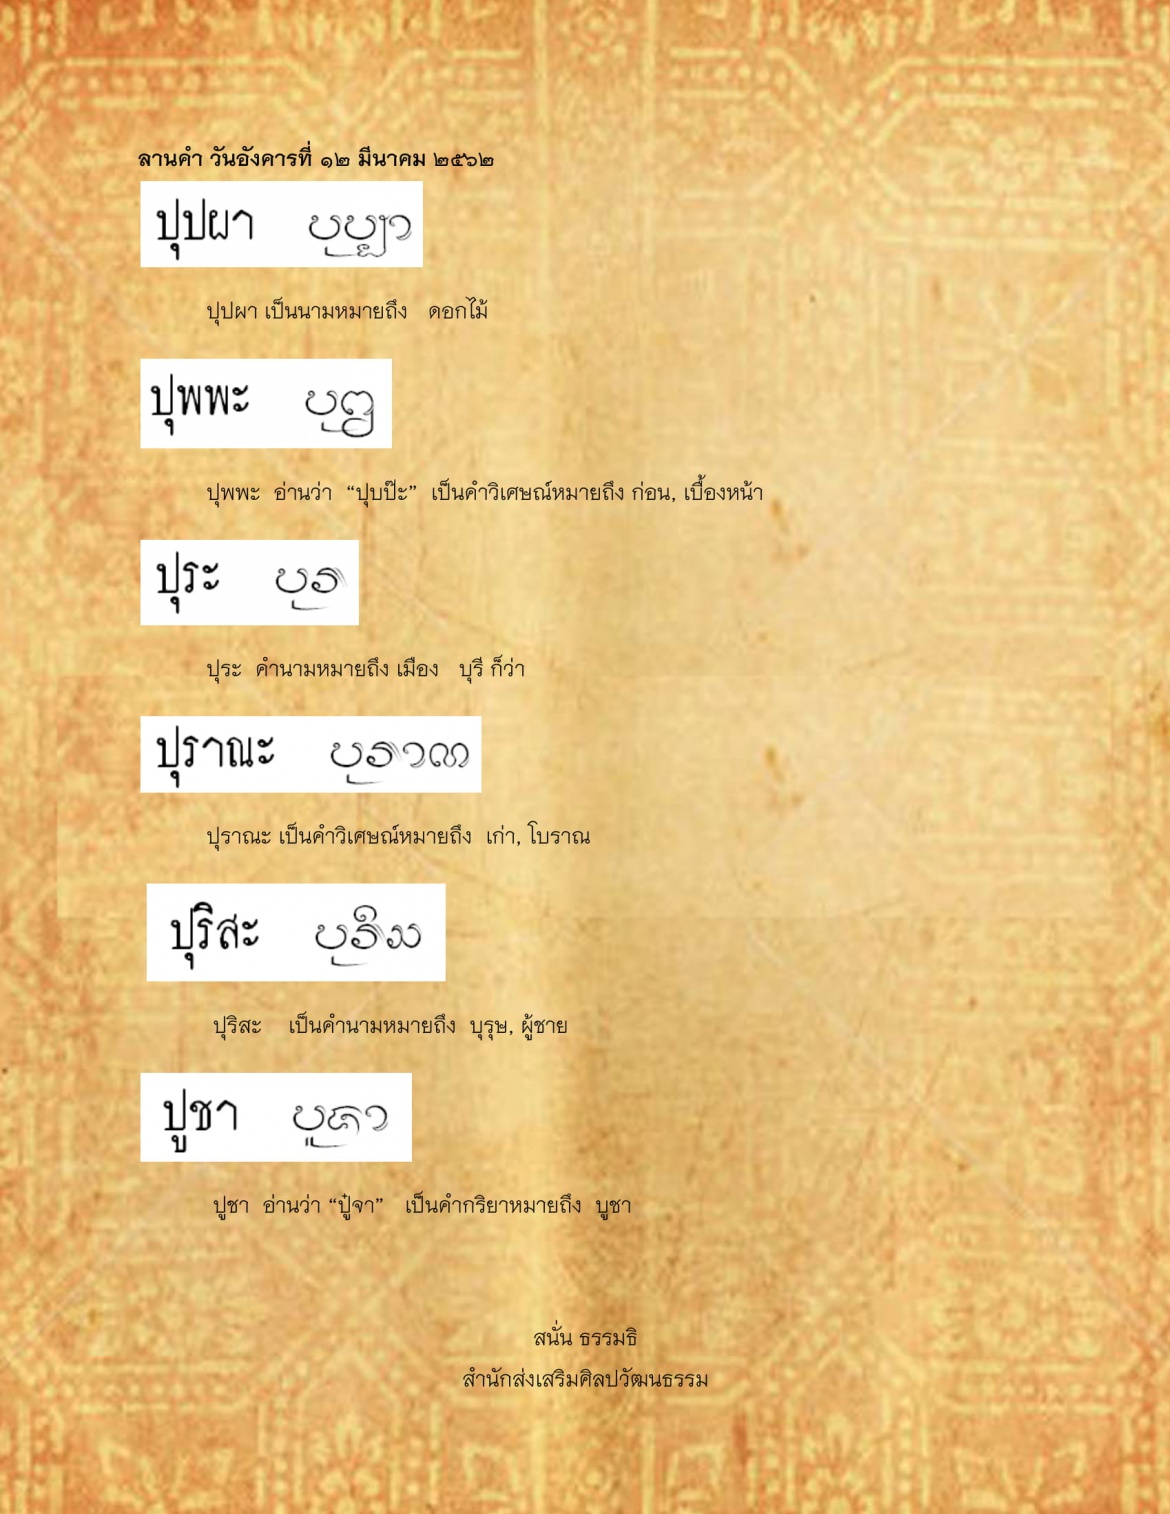 ปุปผา ปูชา - 12 มีนาคม 2562